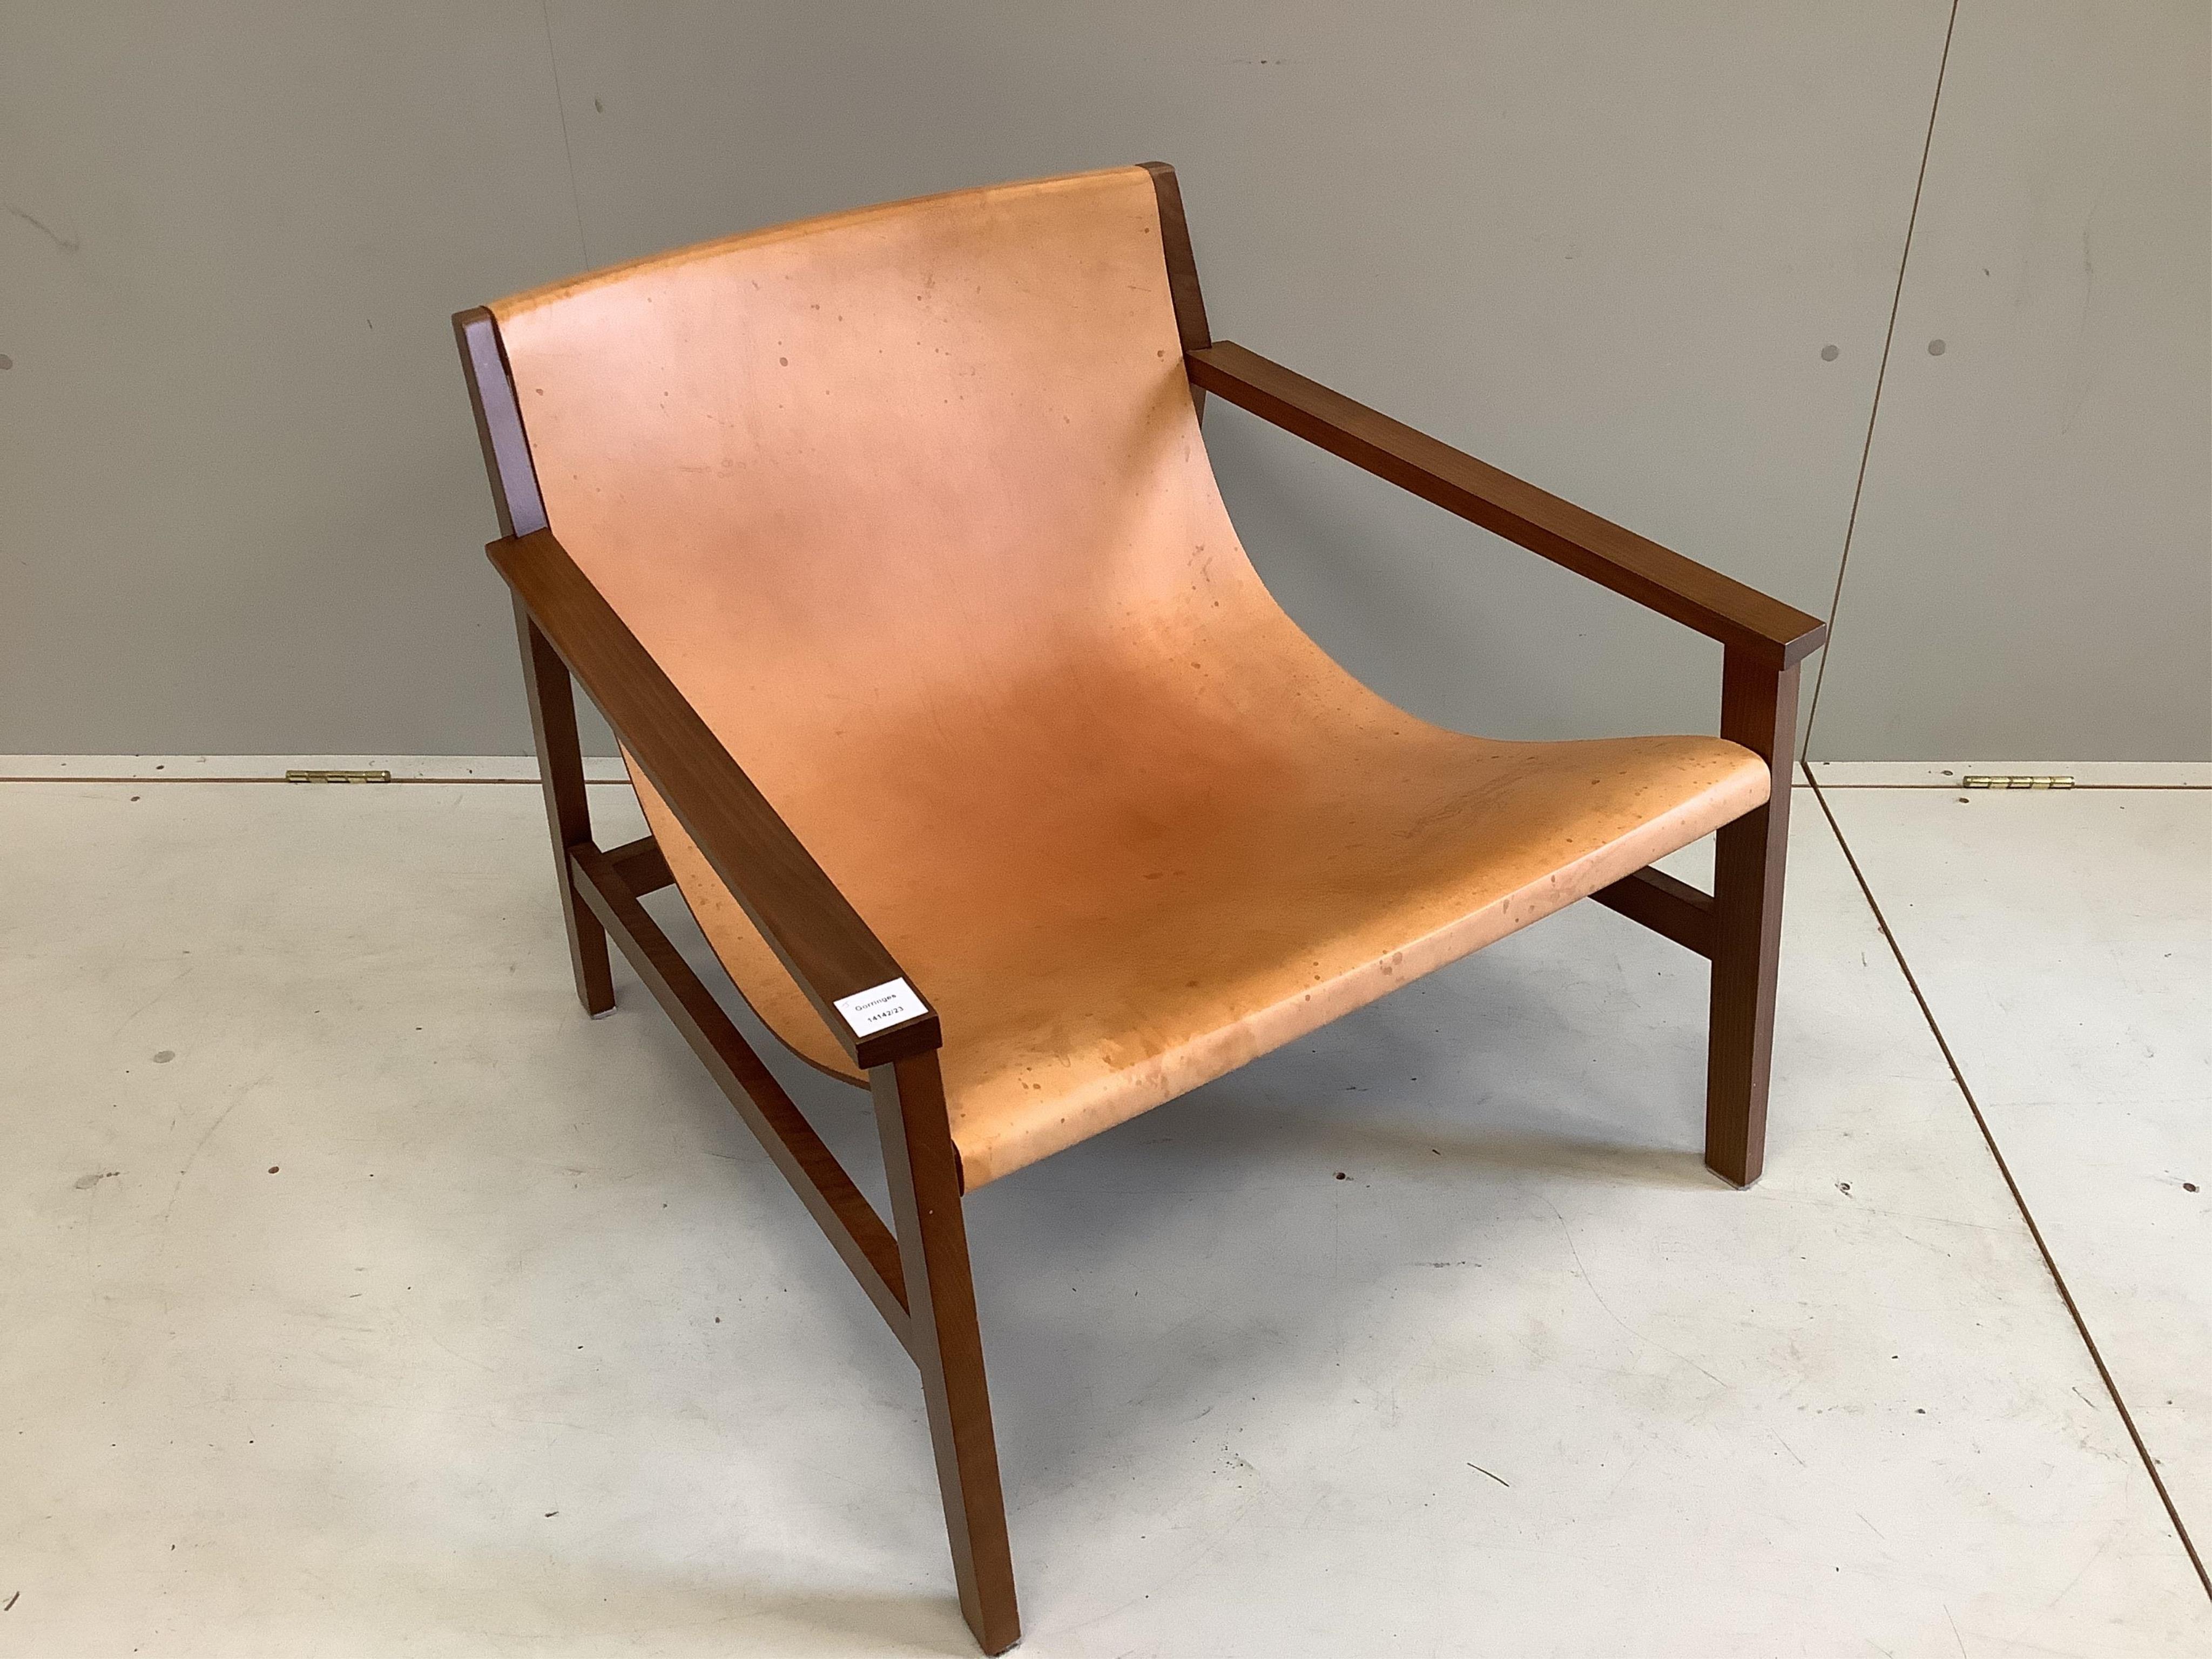 A Sdraio Chair by Living Divani, width 77cm, depth 74cm, height 66cm. Condition - fair